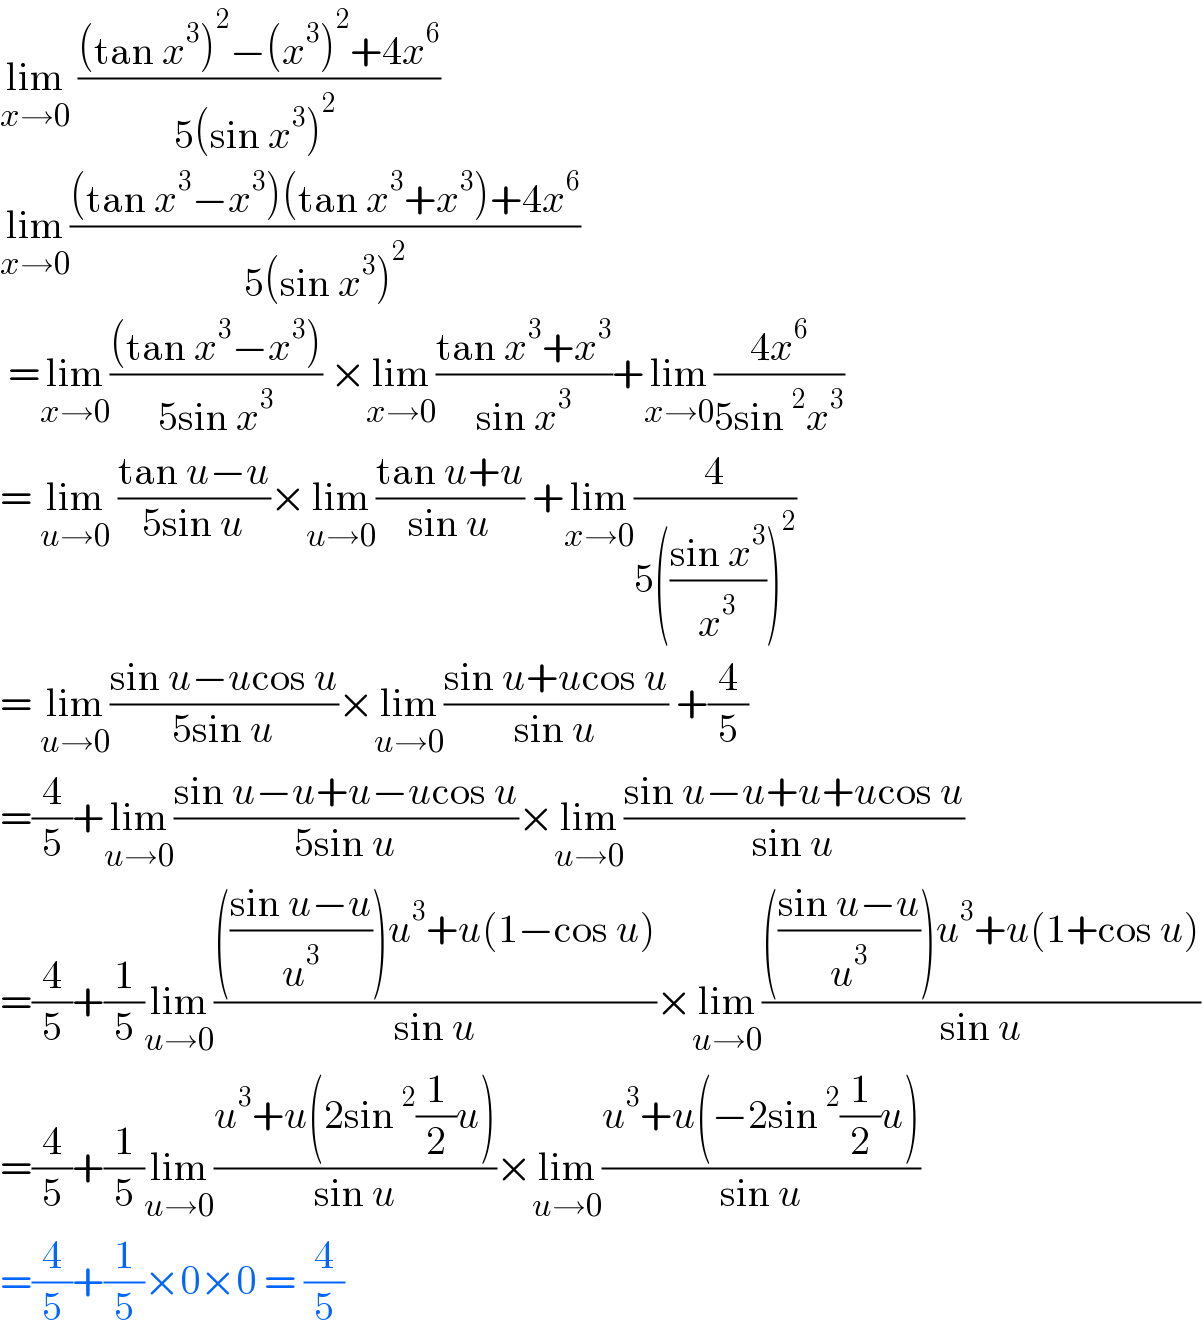 lim_(x→0)  (((tan x^3 )^2 −(x^3 )^2 +4x^6 )/(5(sin x^3 )^2  ))  lim_(x→0) (((tan x^3 −x^3 )(tan x^3 +x^3 )+4x^6 )/(5(sin x^3 )^2 ))   =lim_(x→0) (((tan x^3 −x^3 ))/(5sin x^3 )) ×lim_(x→0) ((tan x^3 +x^3 )/(sin x^3 ))+lim_(x→0) ((4x^6 )/(5sin^2 x^3 ))  = lim_(u→0)  ((tan u−u)/(5sin u))×lim_(u→0) ((tan u+u)/(sin u)) +lim_(x→0) (4/(5(((sin x^3 )/x^3 ))^2 ))  = lim_(u→0) ((sin u−ucos u)/(5sin u))×lim_(u→0) ((sin u+ucos u)/(sin u)) +(4/5)  =(4/5)+lim_(u→0) ((sin u−u+u−ucos u)/(5sin u))×lim_(u→0) ((sin u−u+u+ucos u)/(sin u))  =(4/5)+(1/5)lim_(u→0) (((((sin u−u)/u^3 ))u^3 +u(1−cos u))/(sin u))×lim_(u→0) (((((sin u−u)/u^3 ))u^3 +u(1+cos u))/(sin u))  =(4/5)+(1/5)lim_(u→0) ((u^3 +u(2sin^2 (1/2)u))/(sin u))×lim_(u→0) ((u^3 +u(−2sin^2 (1/2)u))/(sin u))  =(4/5)+(1/5)×0×0 = (4/5)  